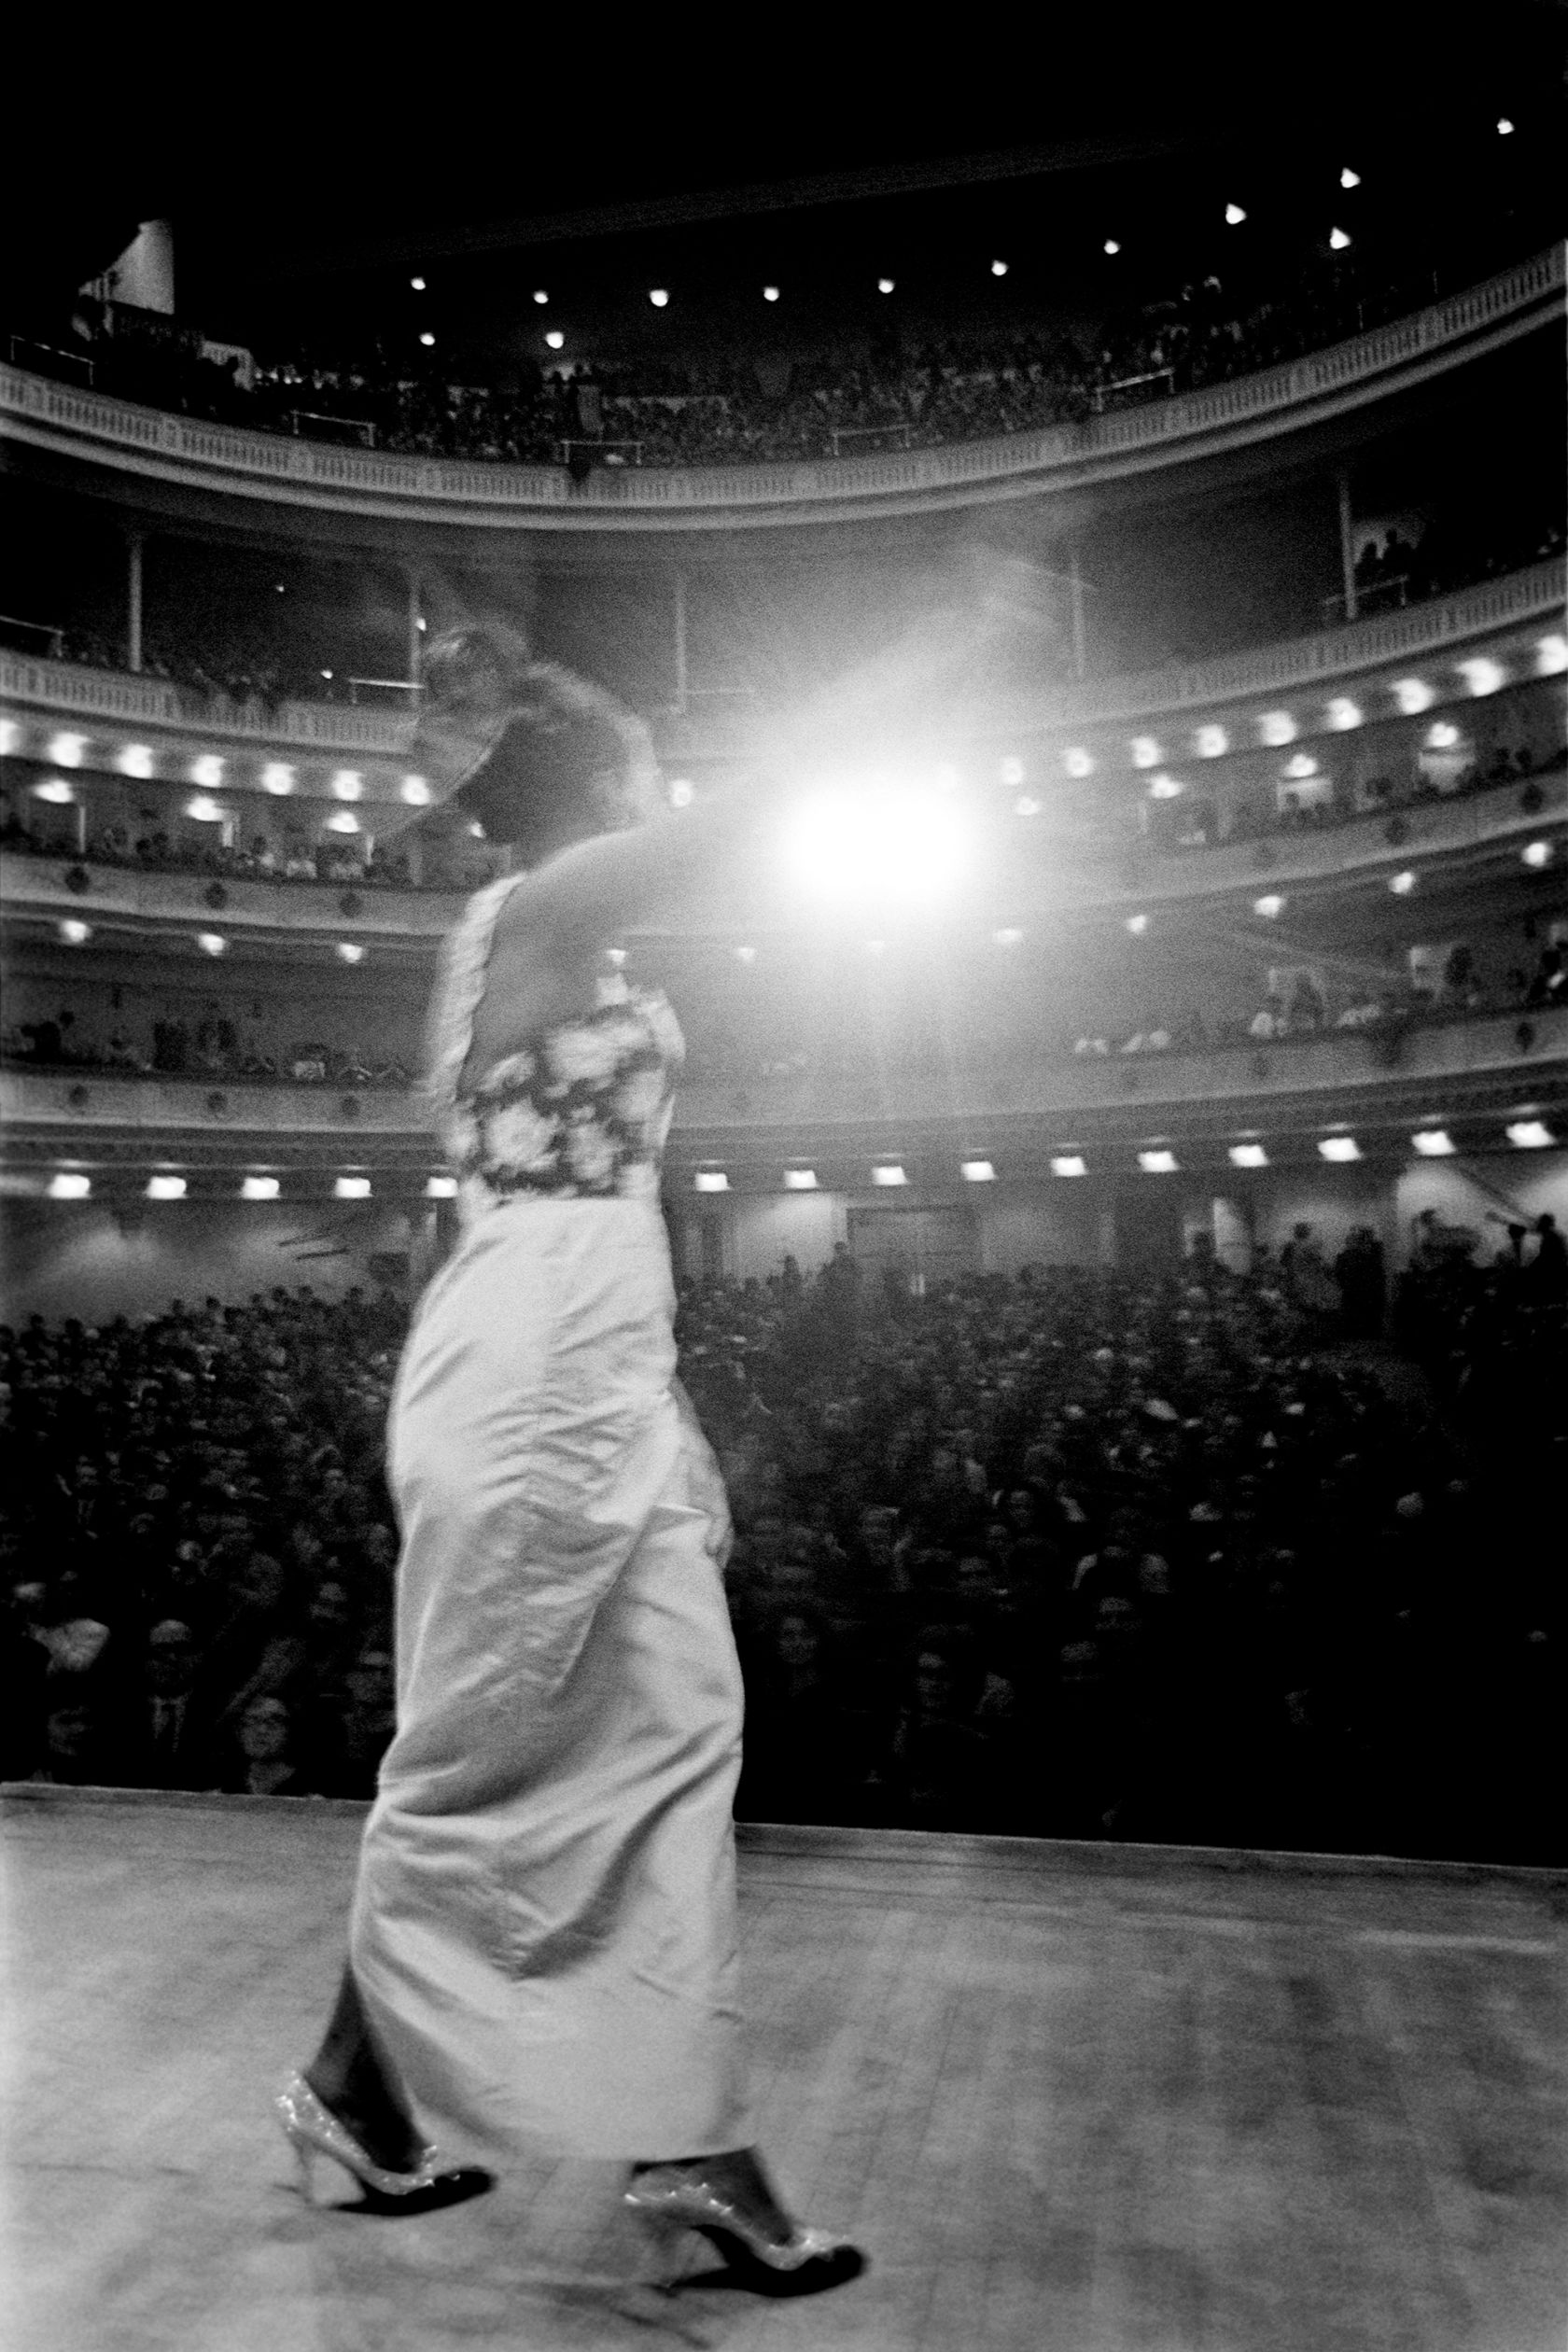 Nina Simone in the Netflix original documentary “What Happened, Miss Simone?